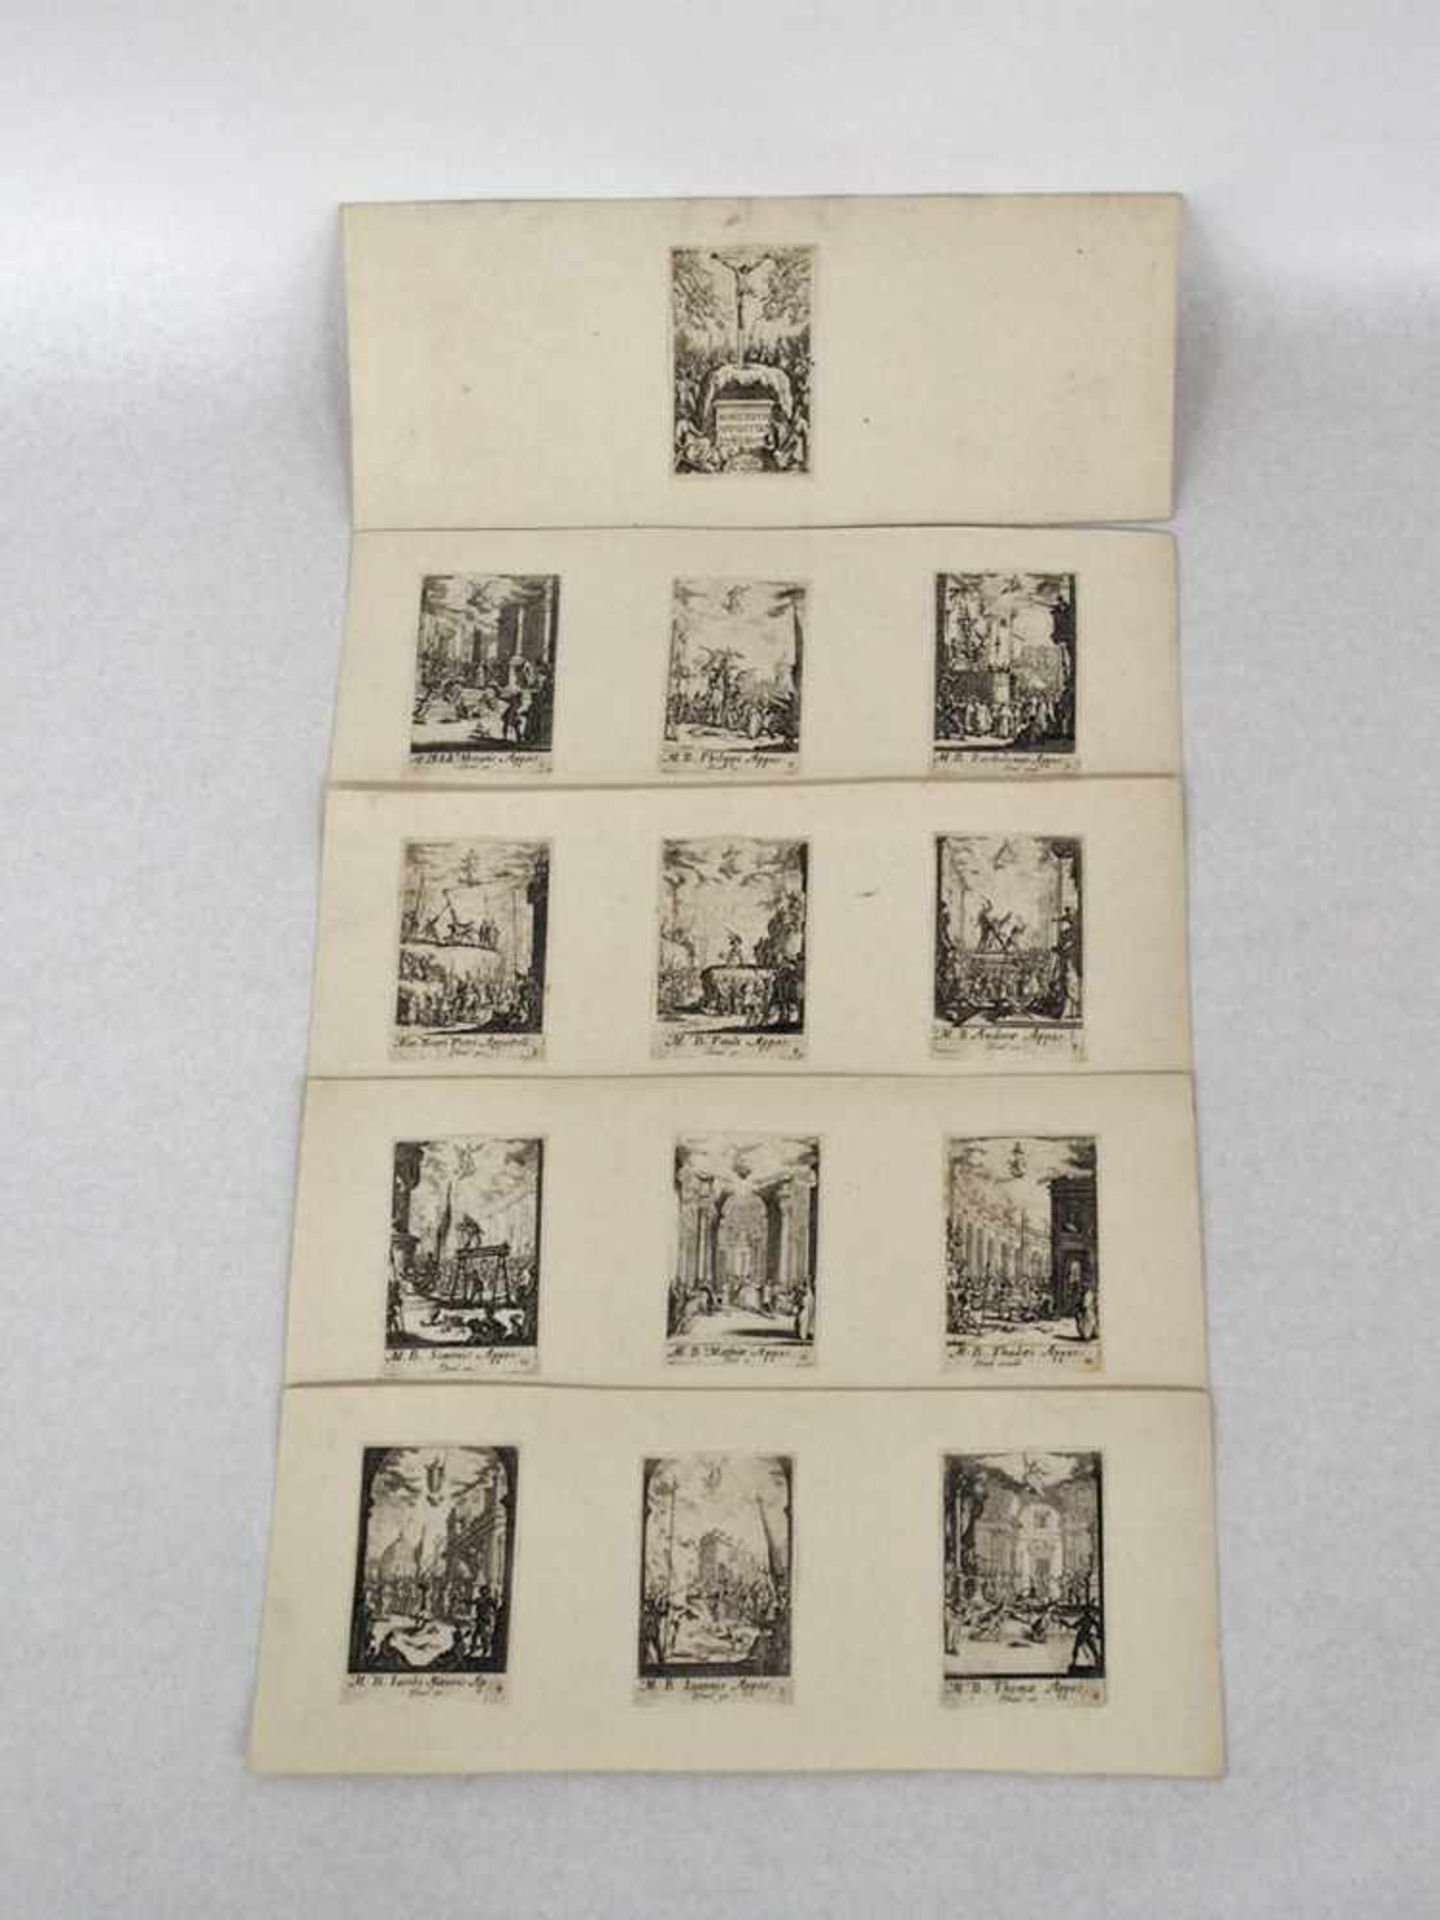 CALLOT, Jaques1592-1635Martiryum appostolorum13 von 16 Radierungen, um 1632, 7,3 x 4,7 cm,